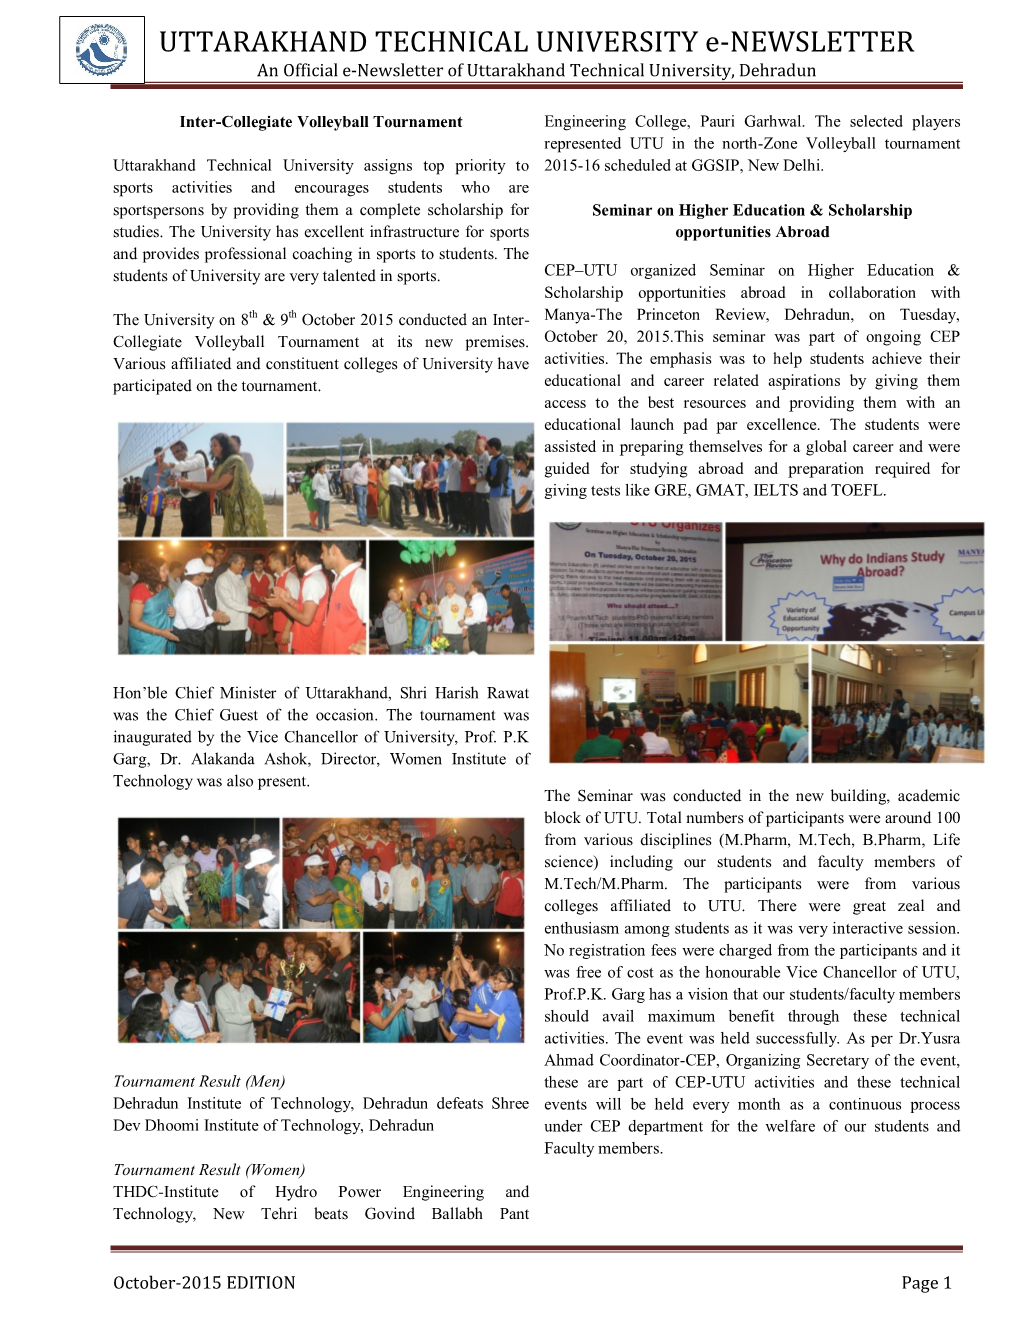 UTTARAKHAND TECHNICAL UNIVERSITY E-NEWSLETTER an Official E-Newsletter of Uttarakhand Technical University, Dehradun